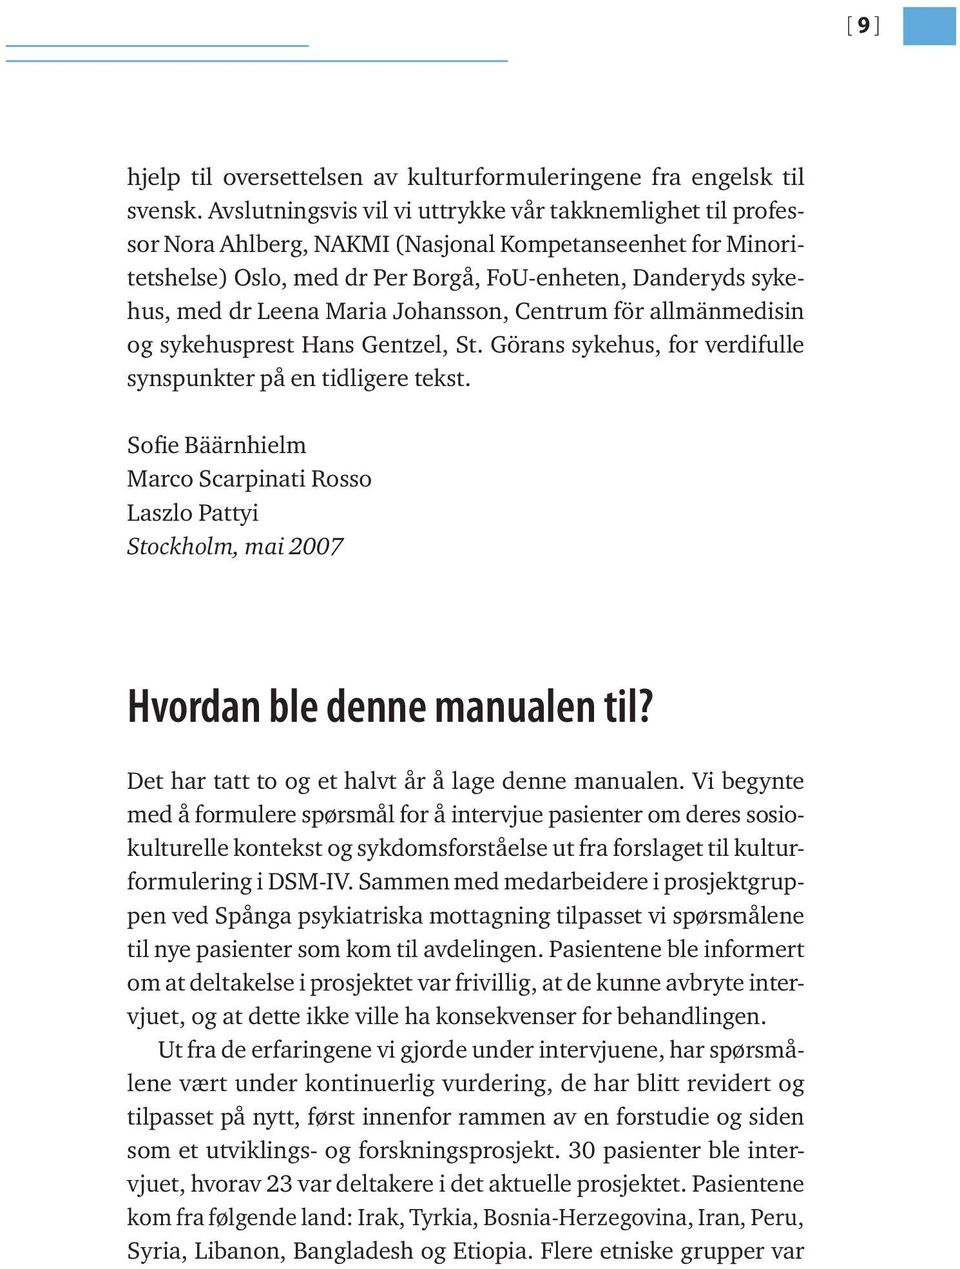 Maria Johansson, Centrum för allmänmedisin og sykehusprest Hans Gentzel, St. Görans sykehus, for verdifulle synspunkter på en tidligere tekst.